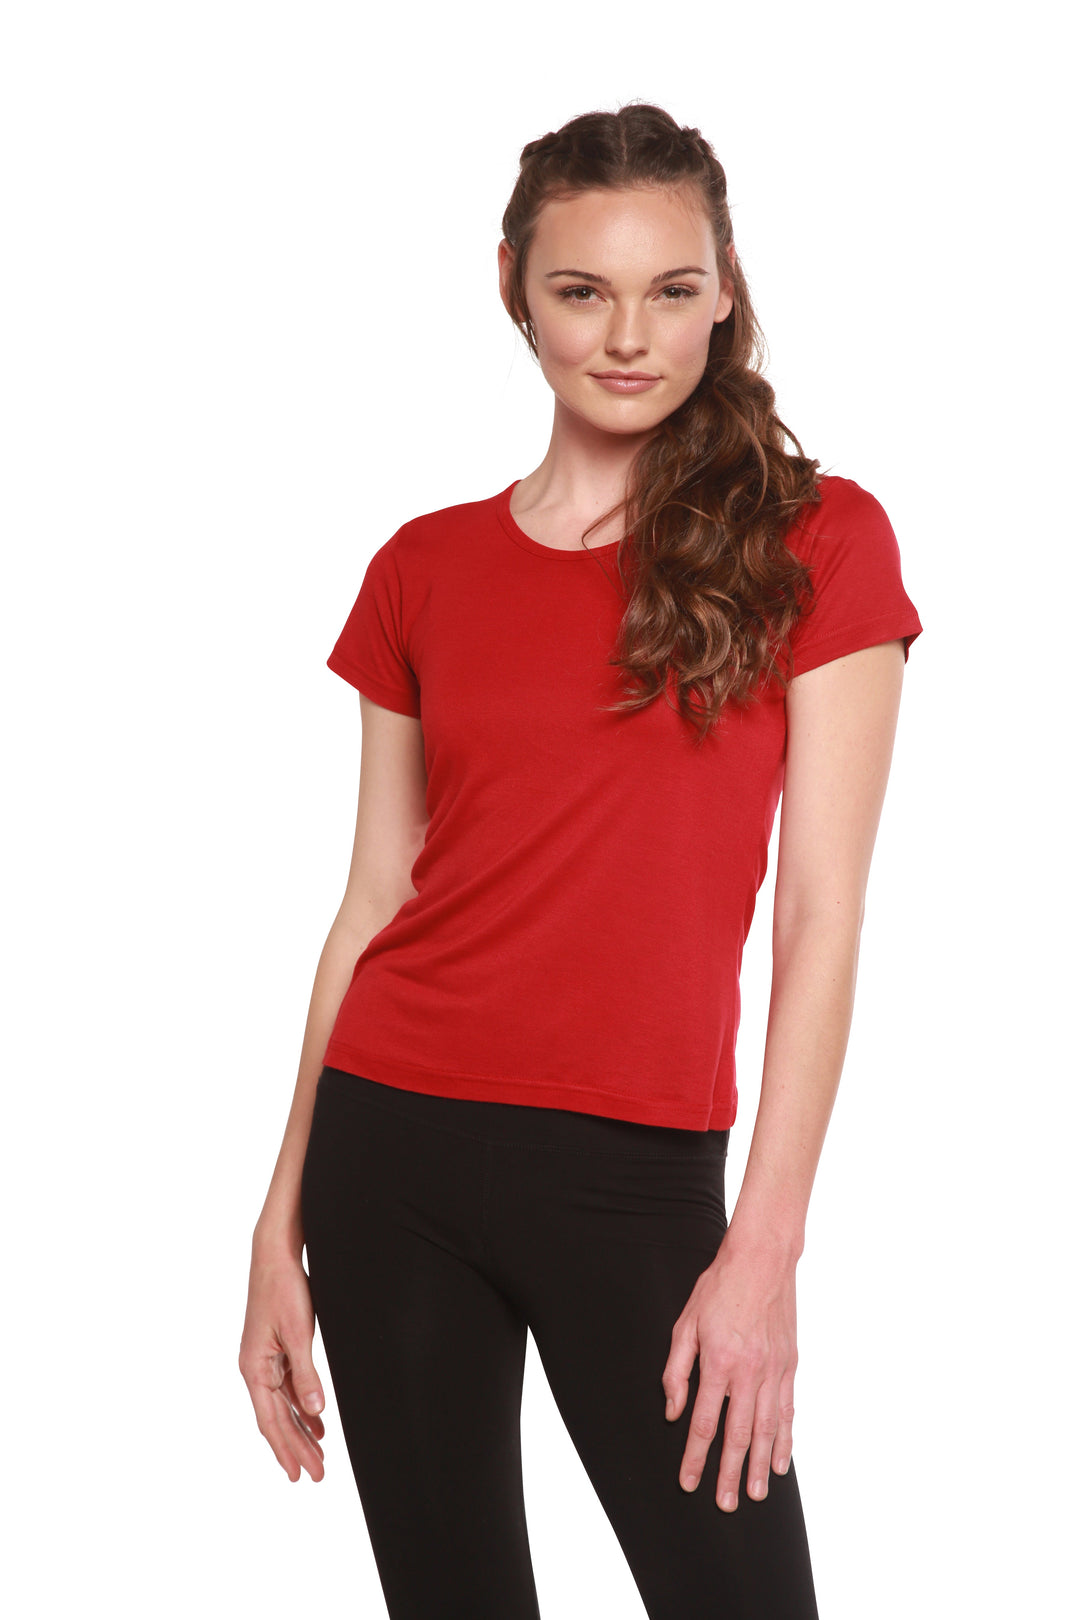 Women's 100% Bamboo Viscose Scoop Neck Short Sleeve T-Shirt – Spun